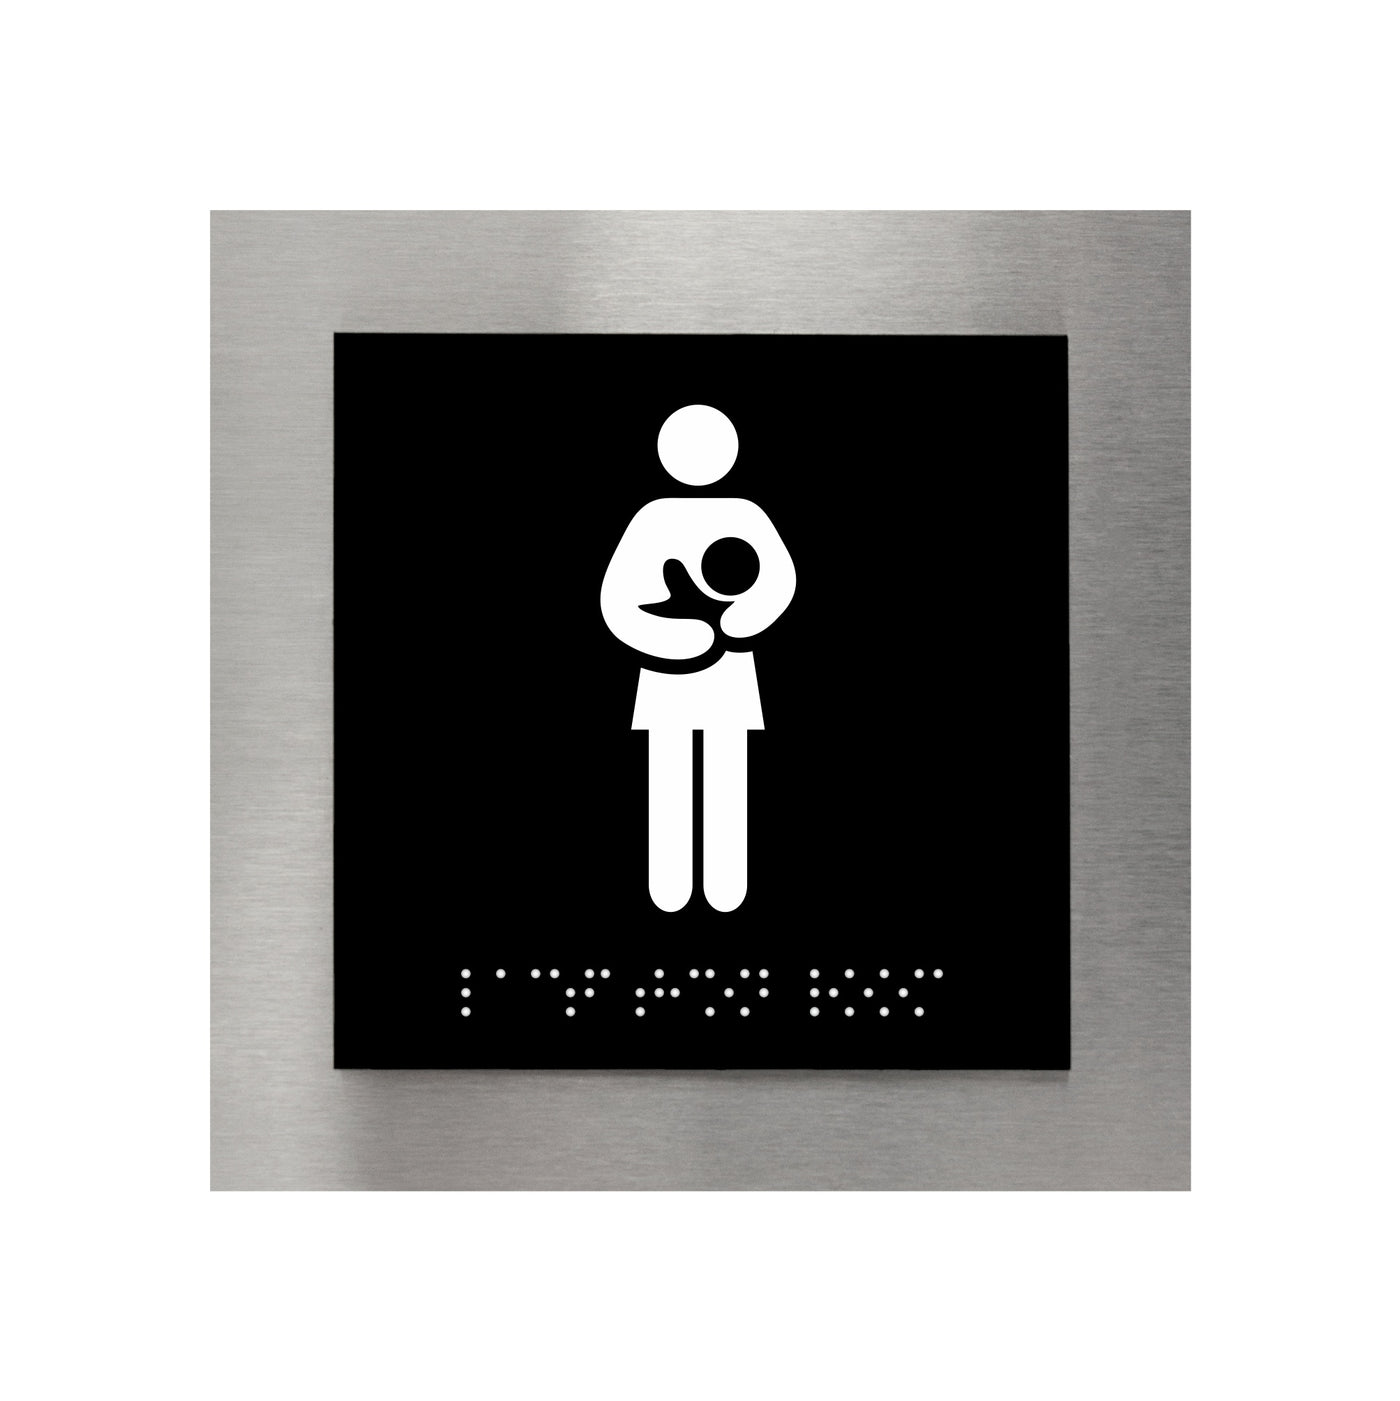 Lactation Room & Mothers Room Sign — "Modern" Design